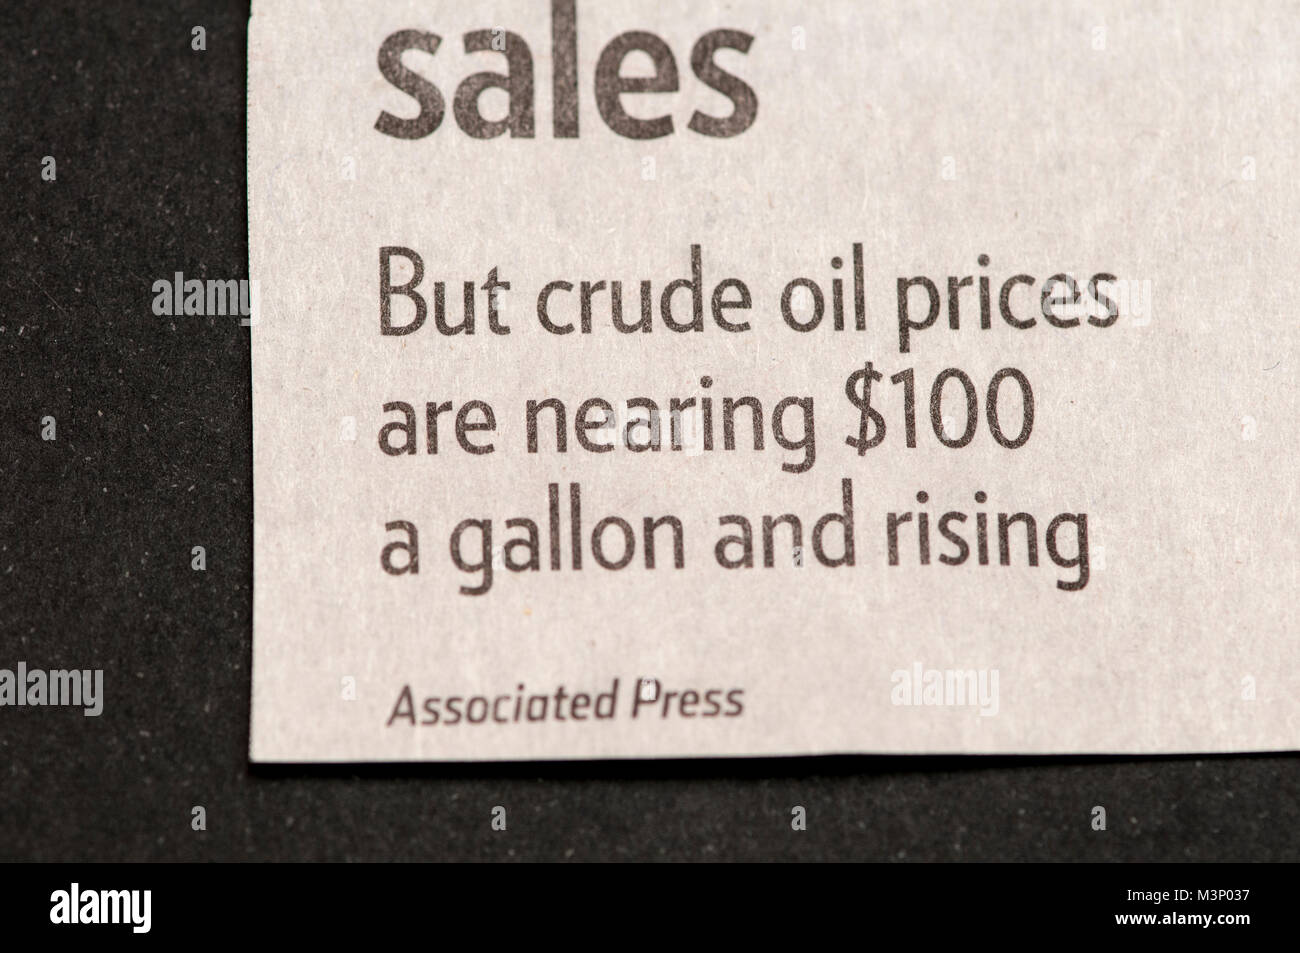 San Paolo, Minnesota. Pioneer Press giornale. Errore di giornale dal Associated Press. $100 un gallone di petrolio greggio. Foto Stock